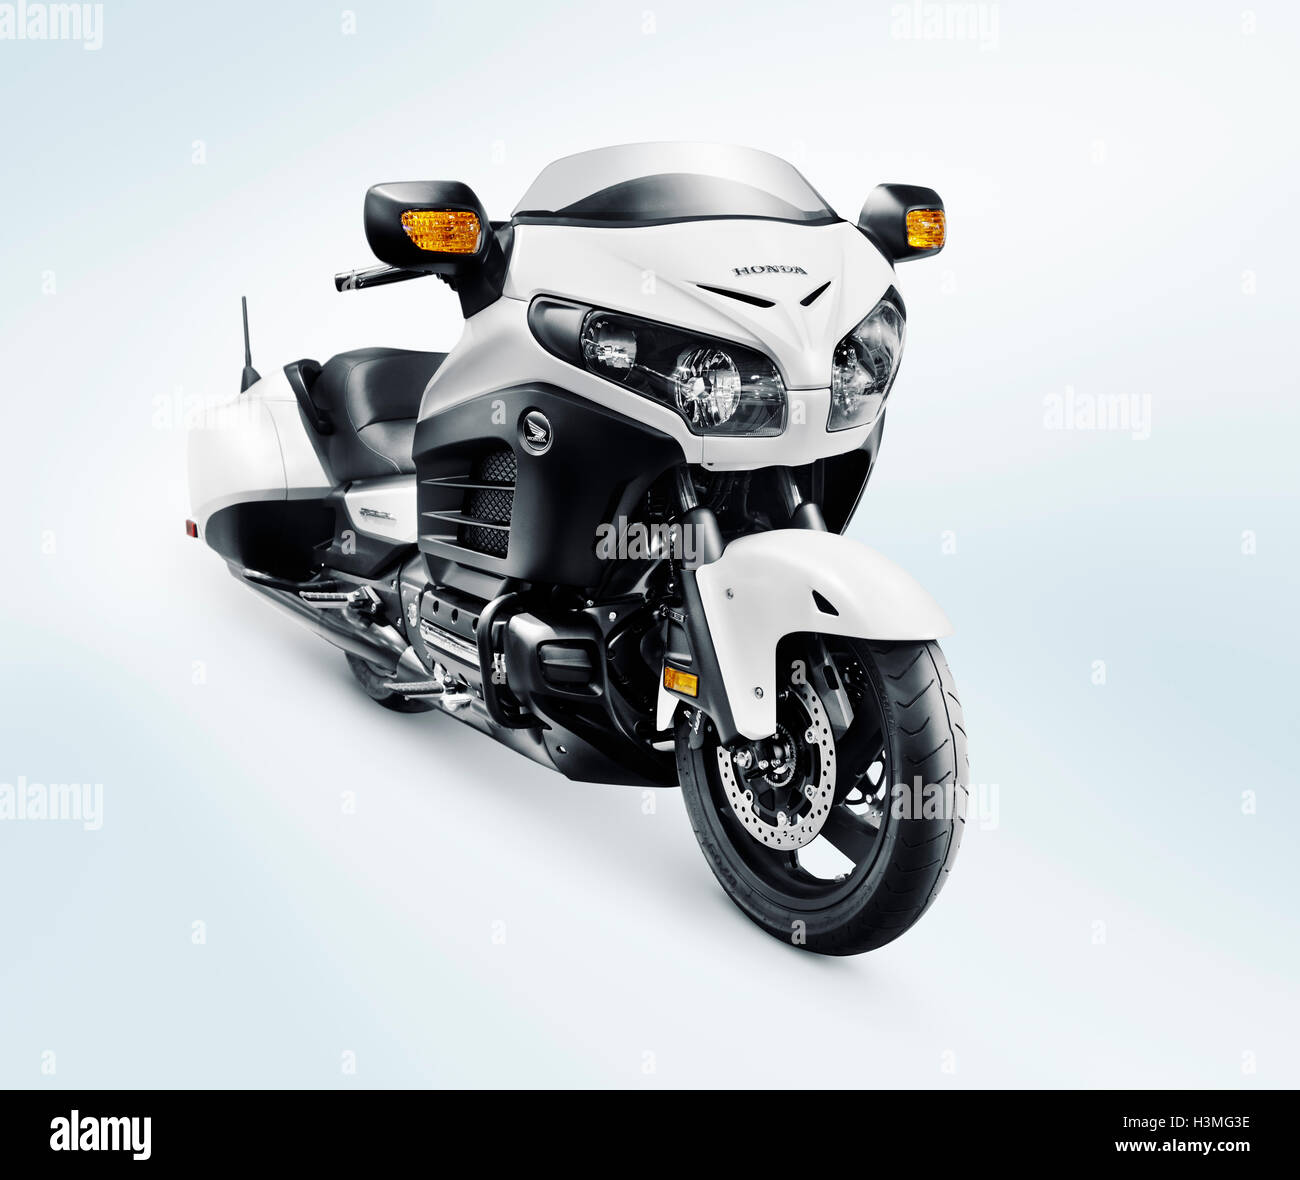 Führerschein erhältlich unter MaximImages.com - 2016 Honda GoldWing F6B Cruiser Motorrad isoliert auf hellblauem Hintergrund Stockfoto